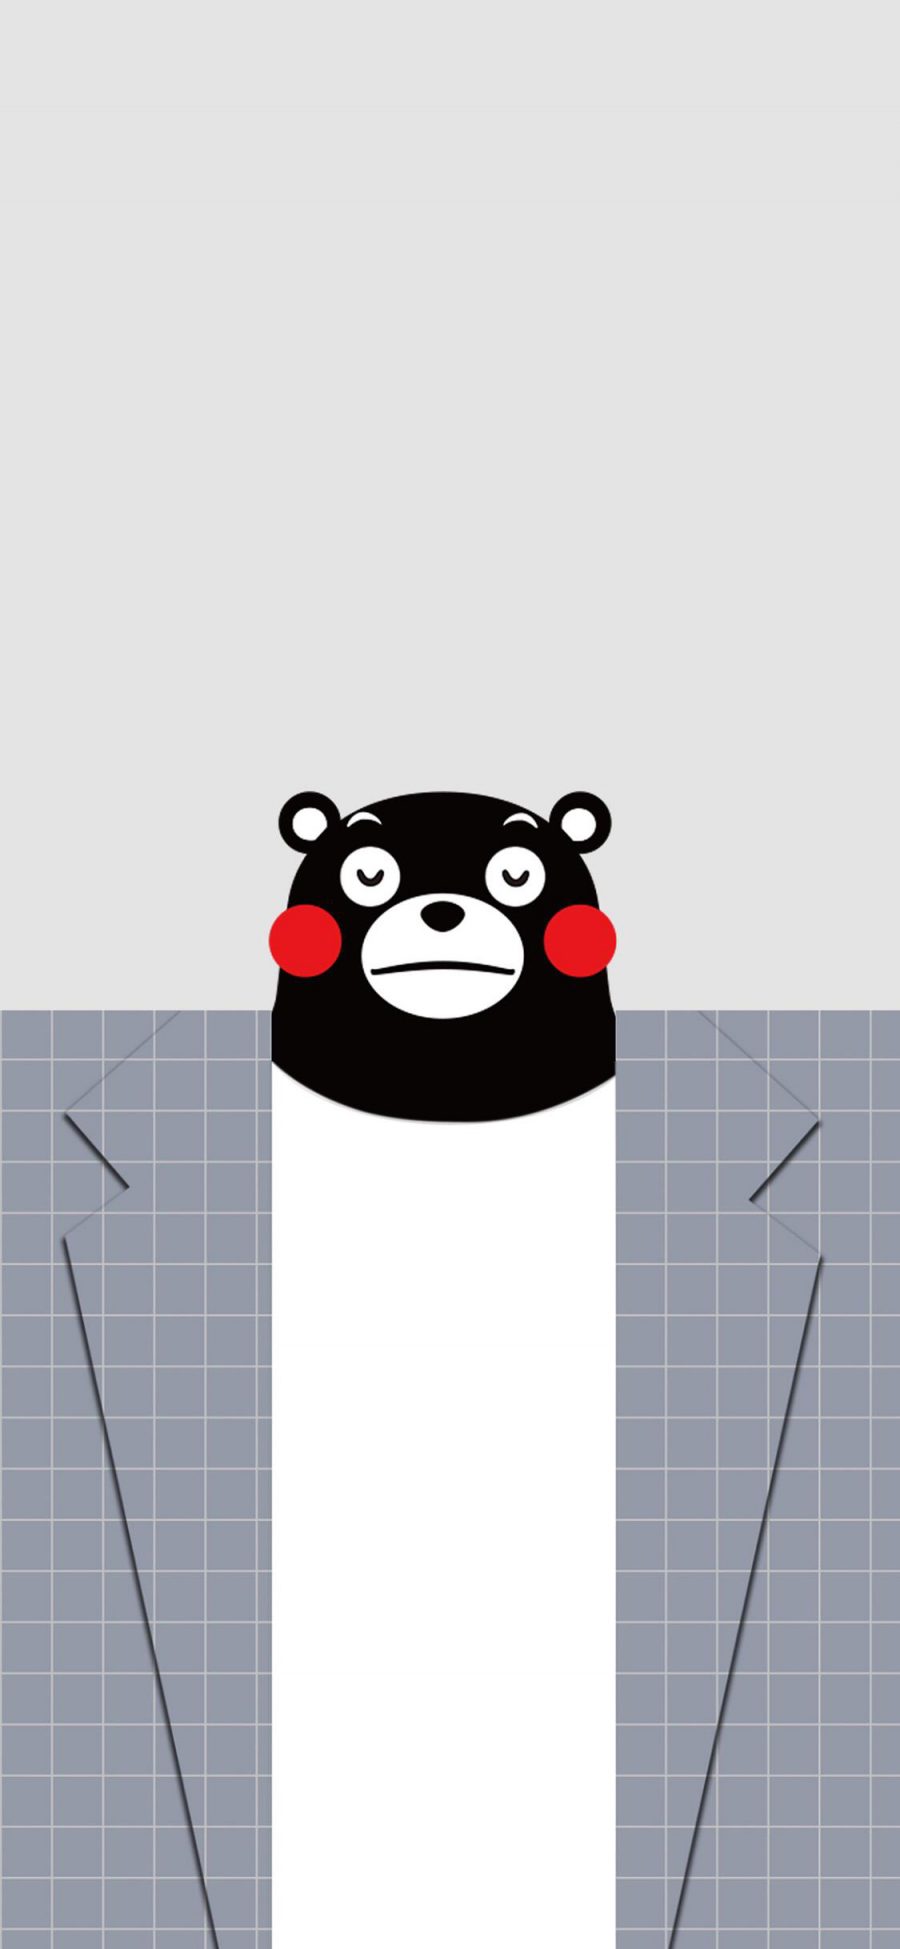 [2436×1125]熊本熊 日本 西装 可爱 卡通 苹果手机动漫壁纸图片